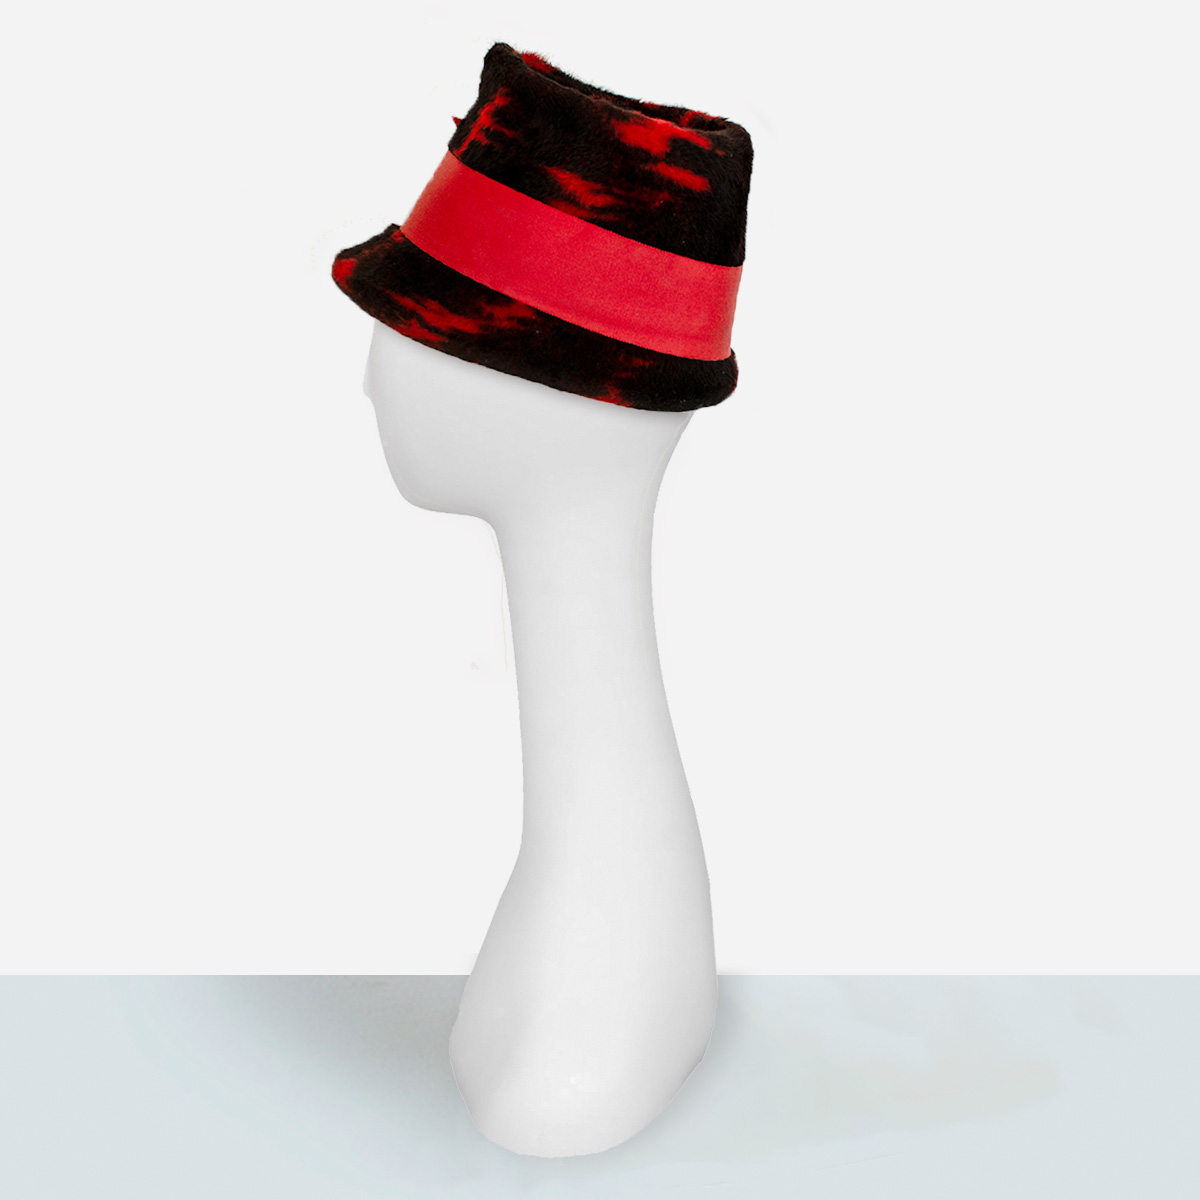 Red and black leslie james hat